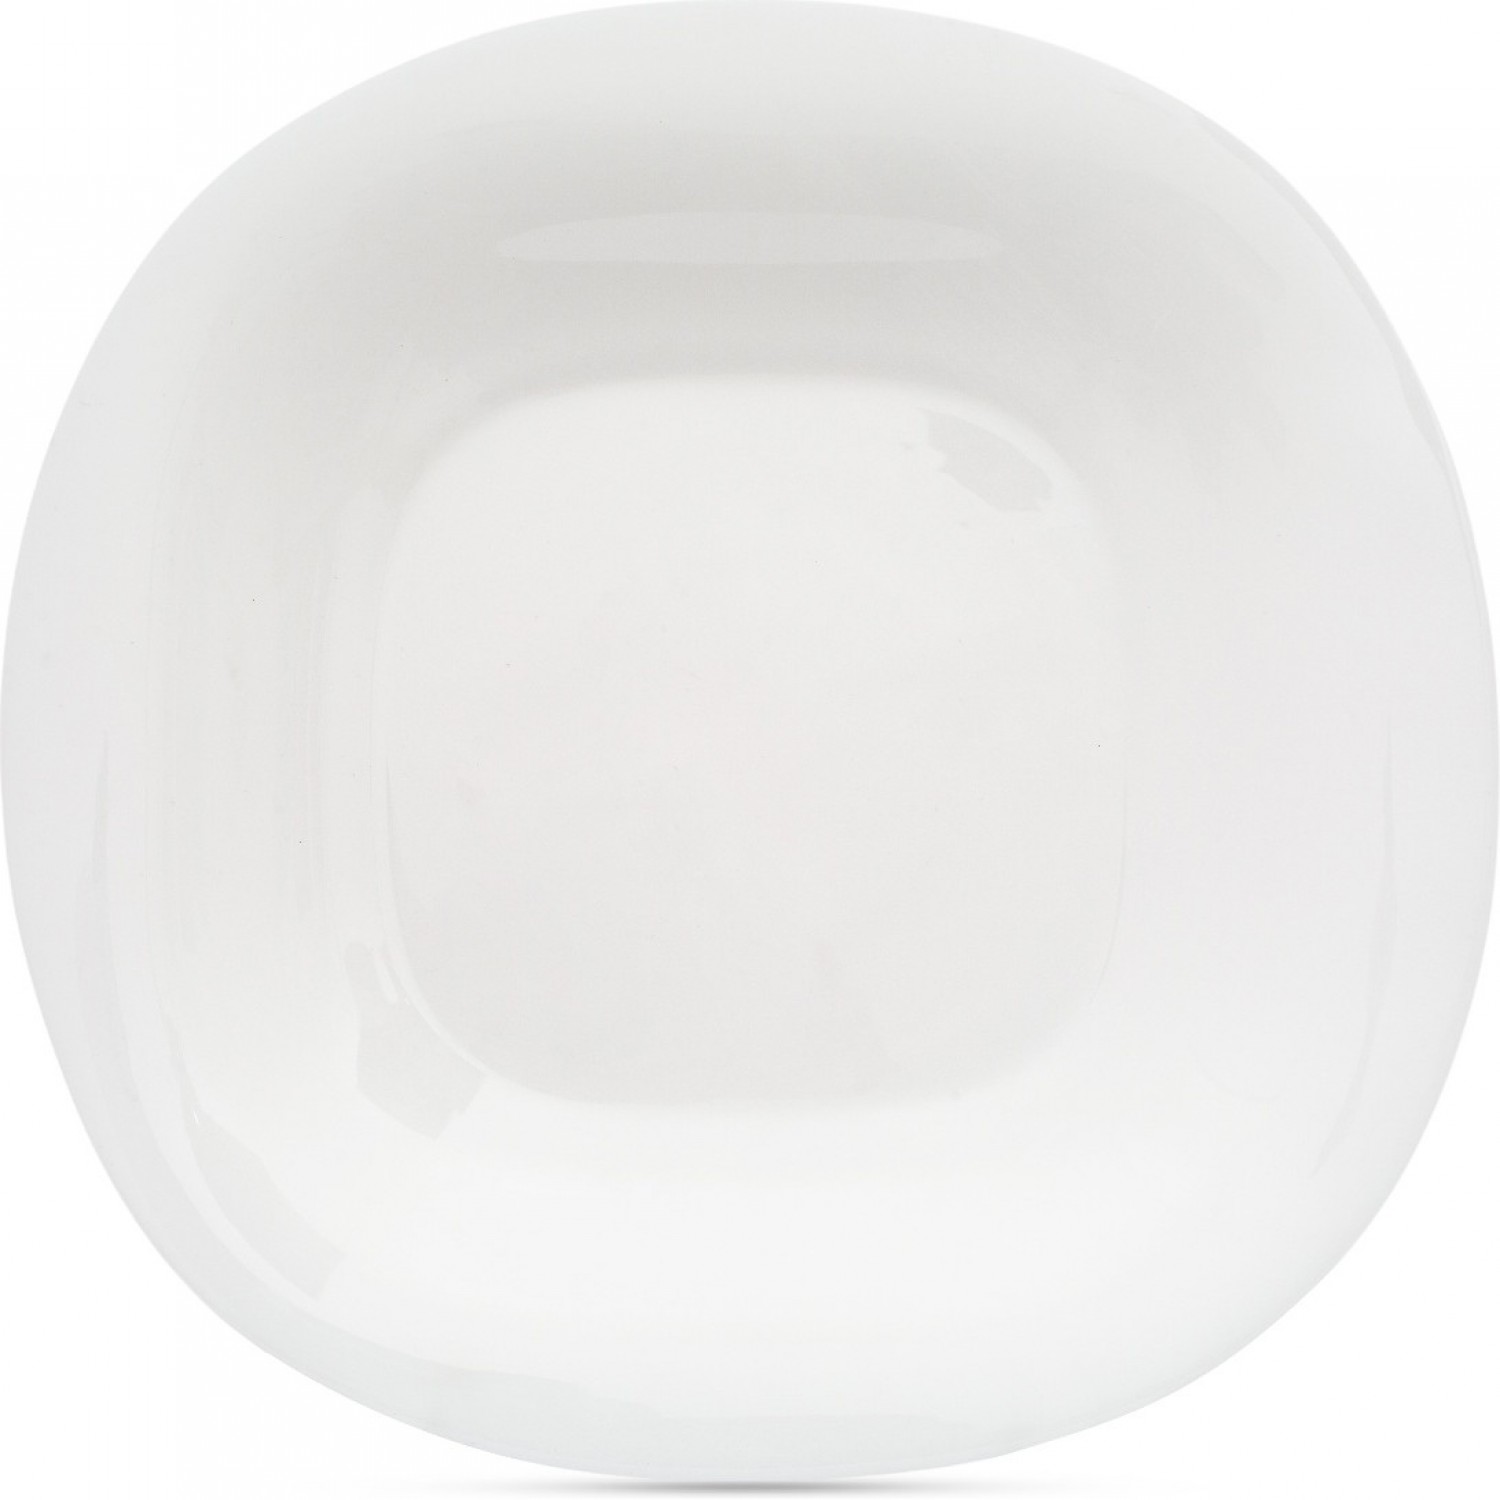 Тарелка обеденная КАРИН БЕЛЫЙ 26см LUMINARC N6804 тарелка обеденная luminarc нью карин h5604 26см белый